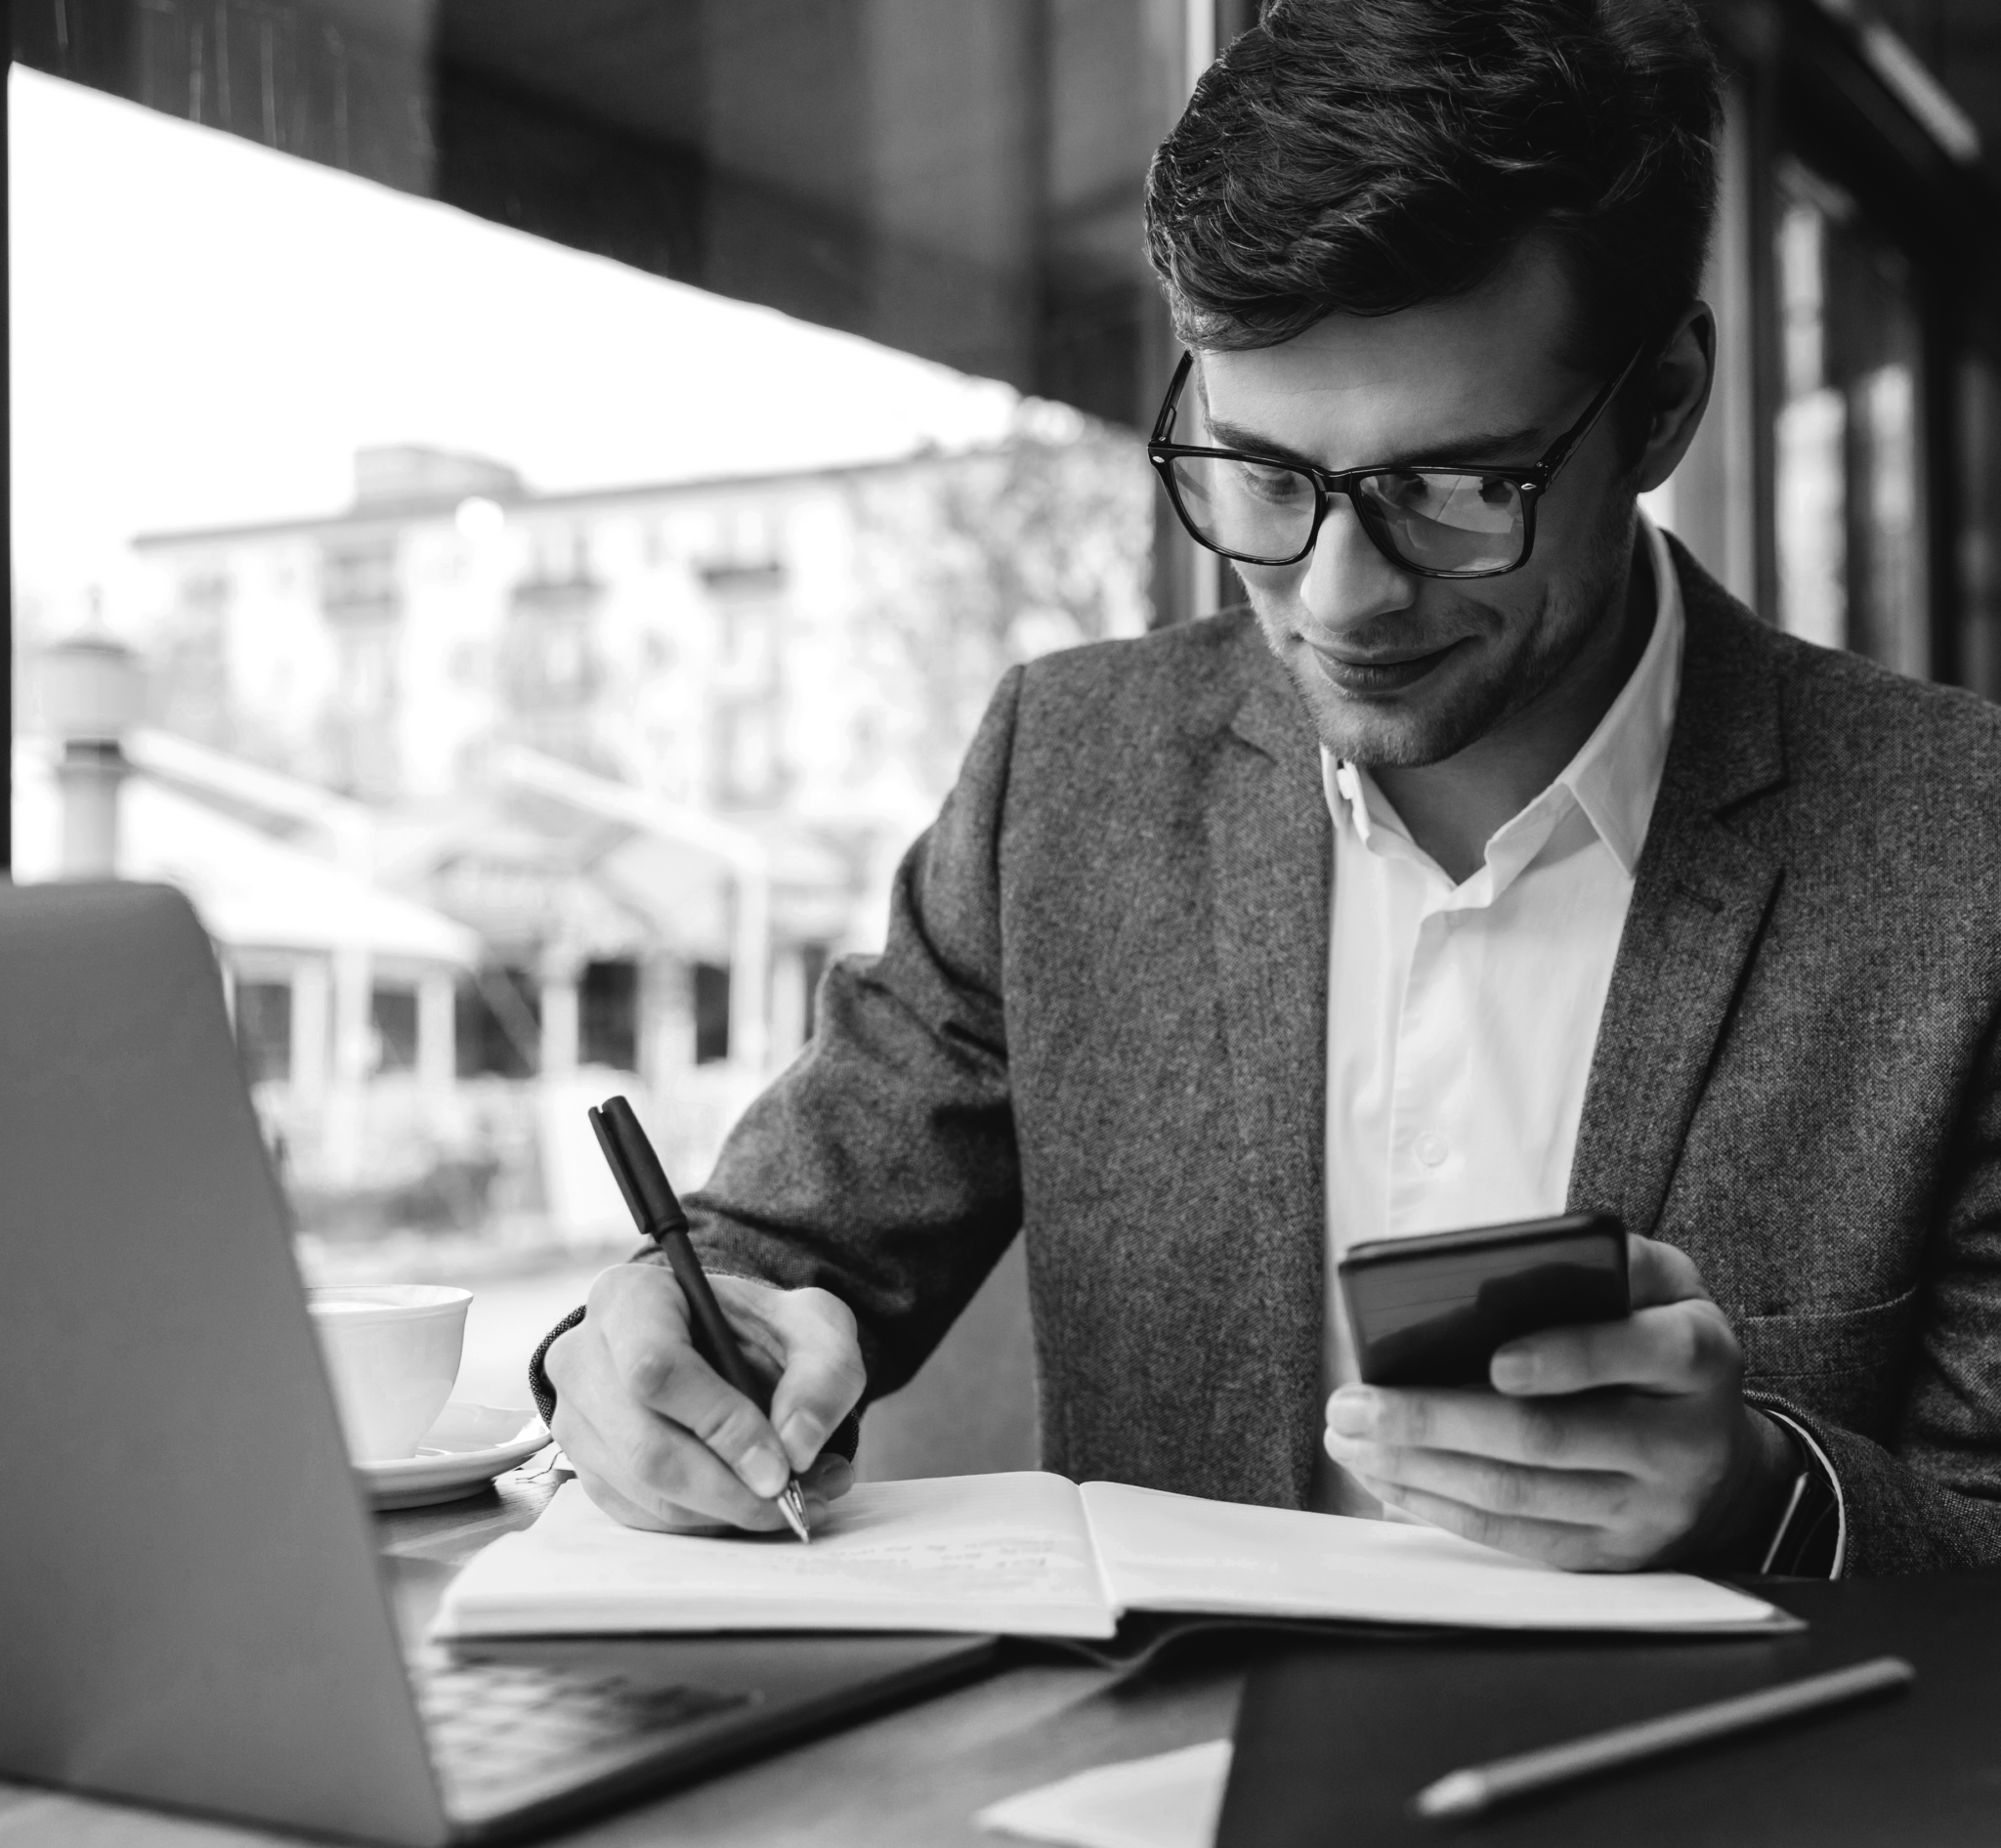 Image noir et blanc d'un comptable qui écrit sur un carnet avec son téléphone dans la main gauche